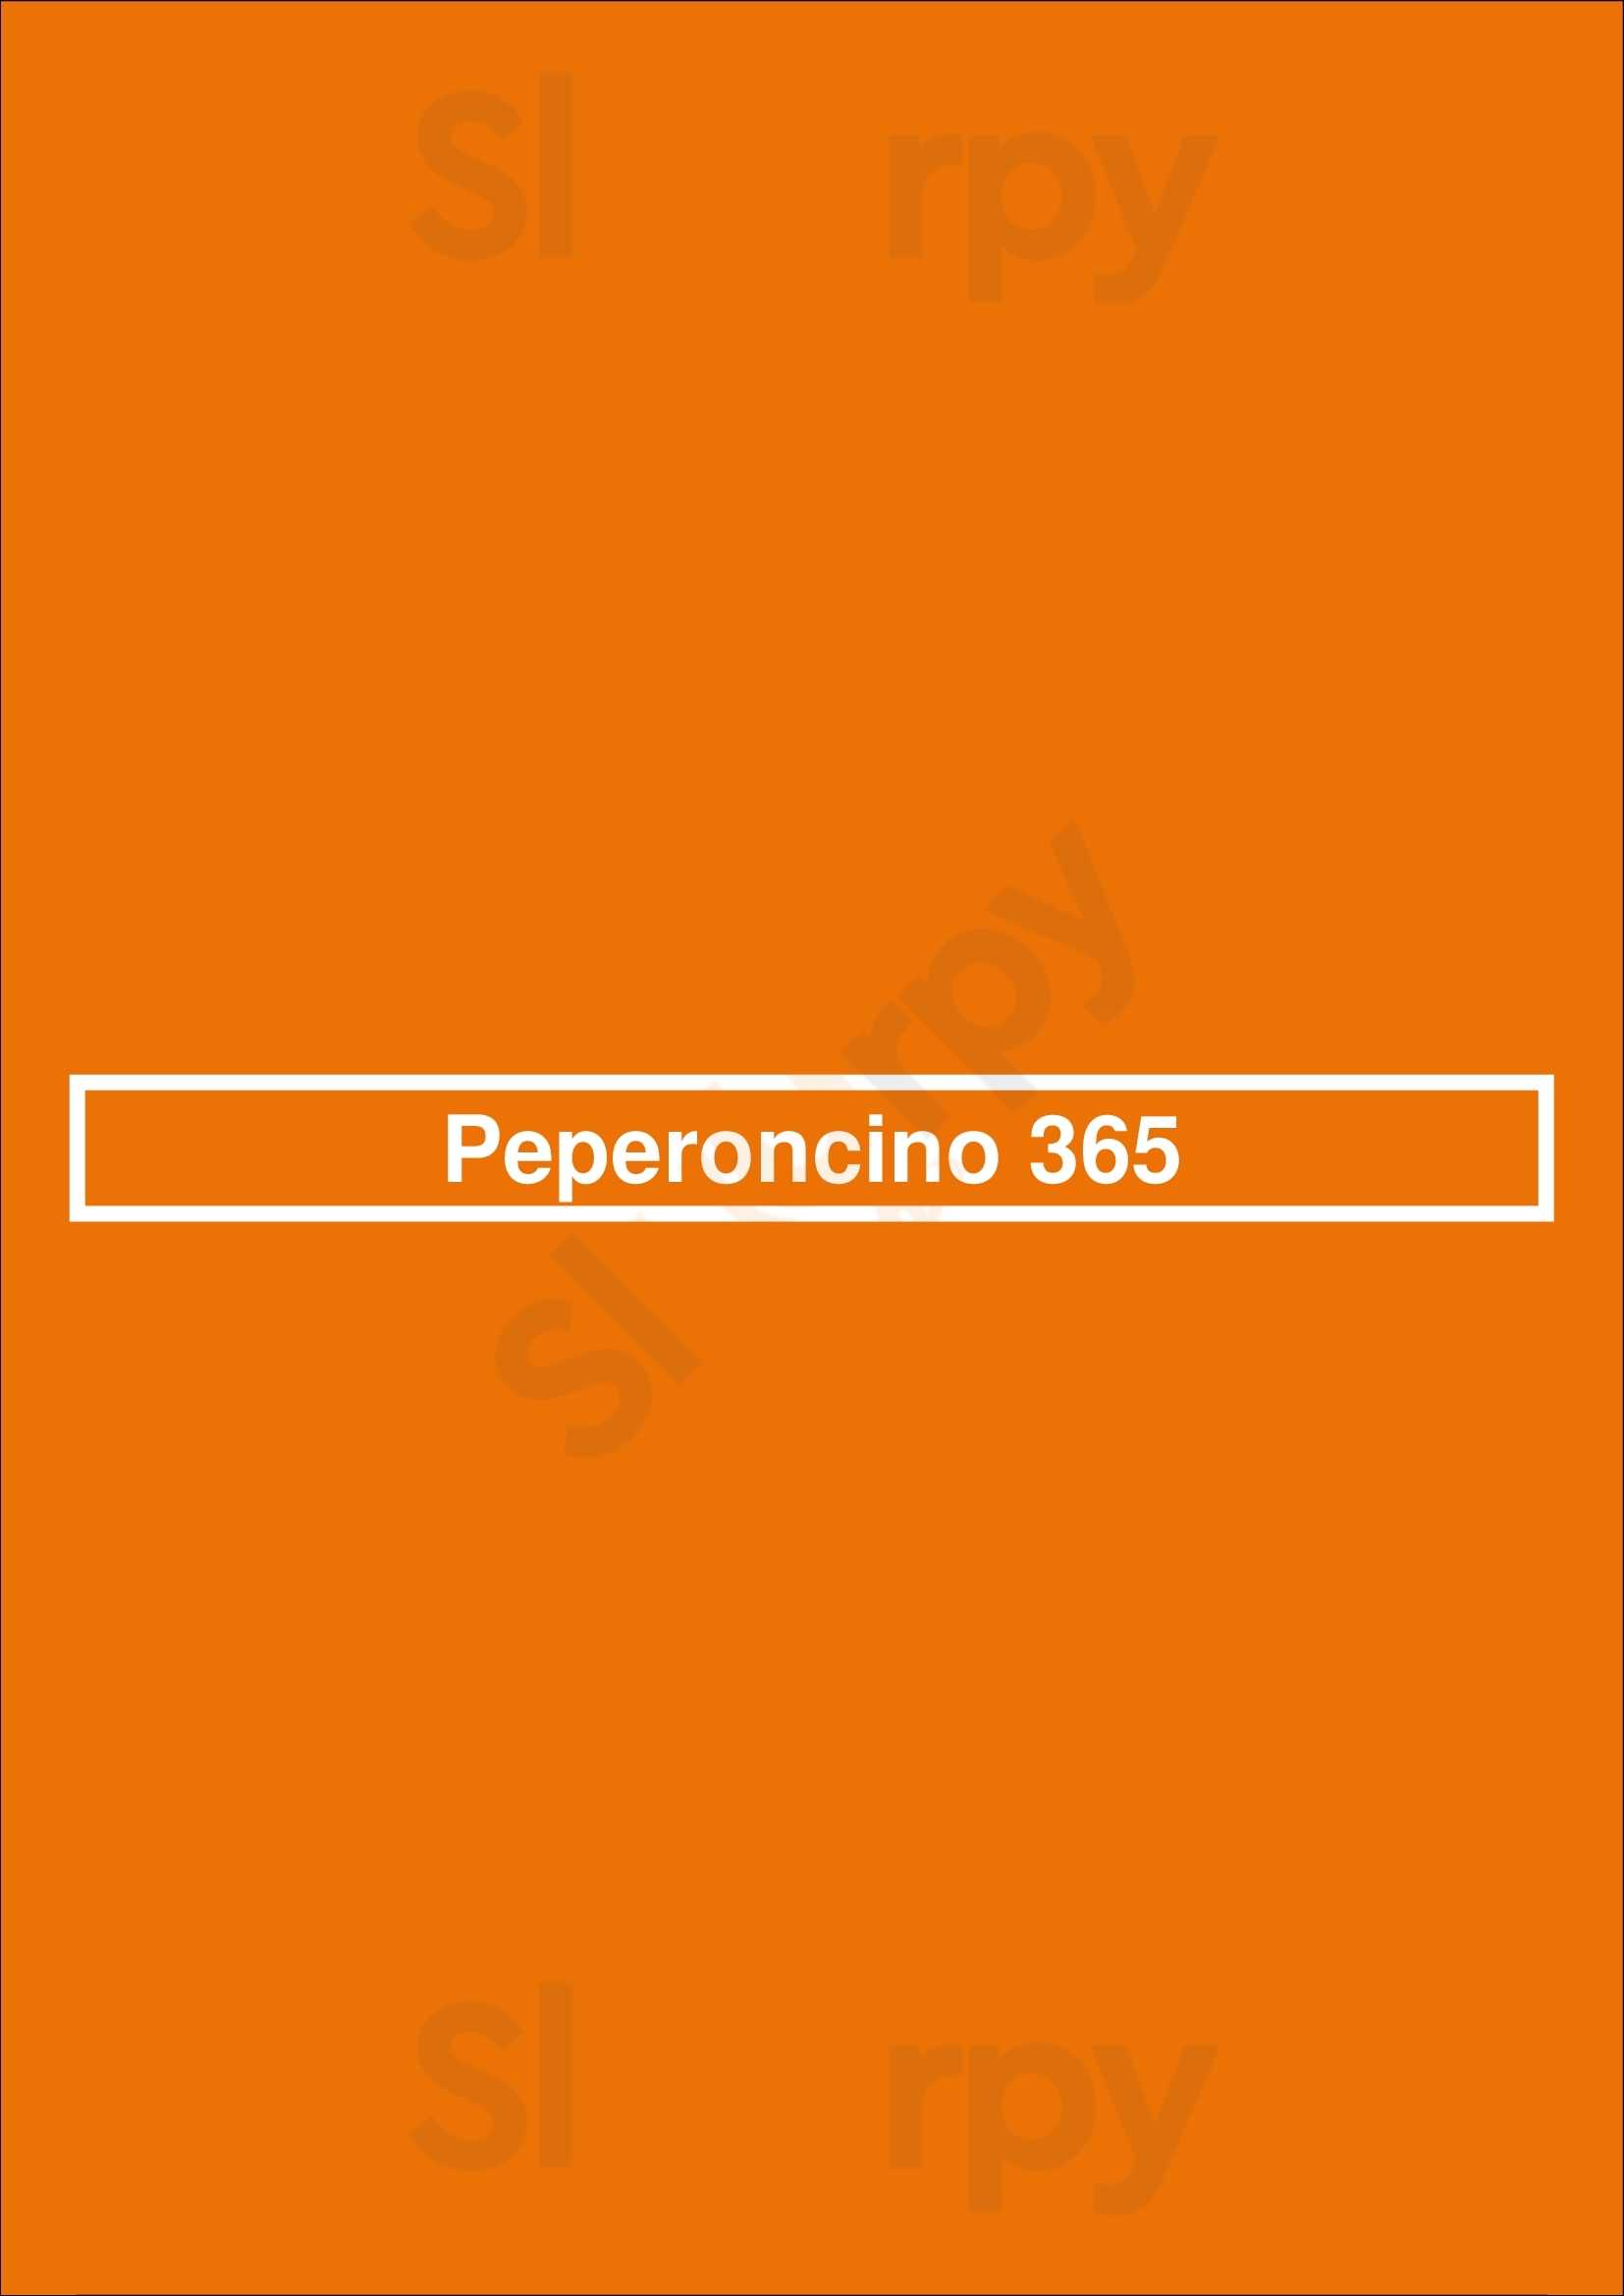 Peperoncino 365 Aalsmeer Menu - 1